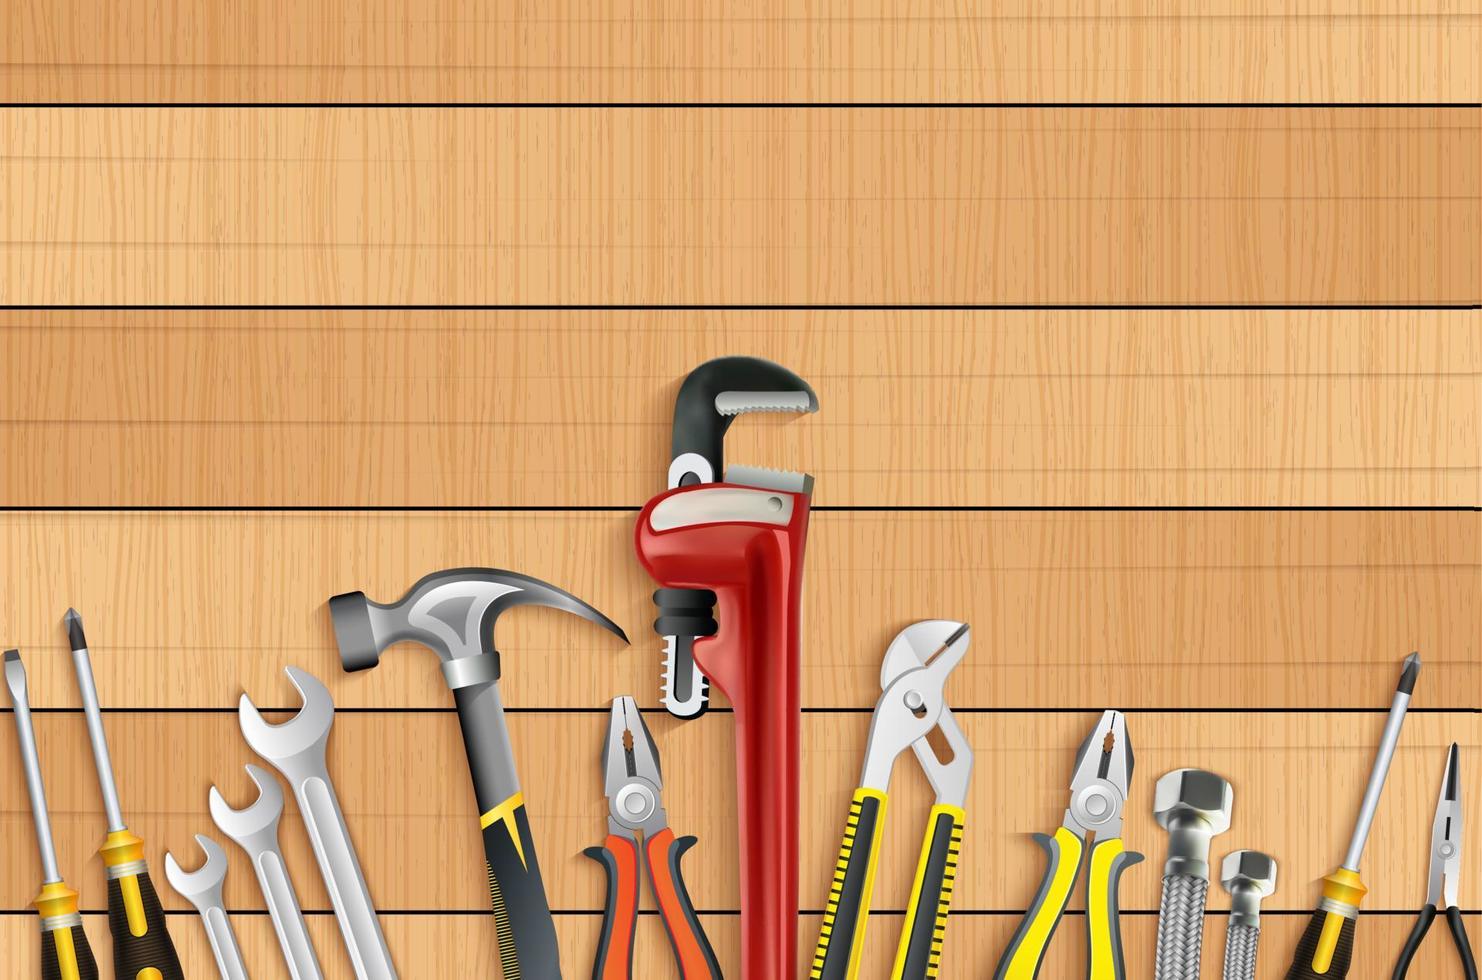 loodgieter tools icon set vector